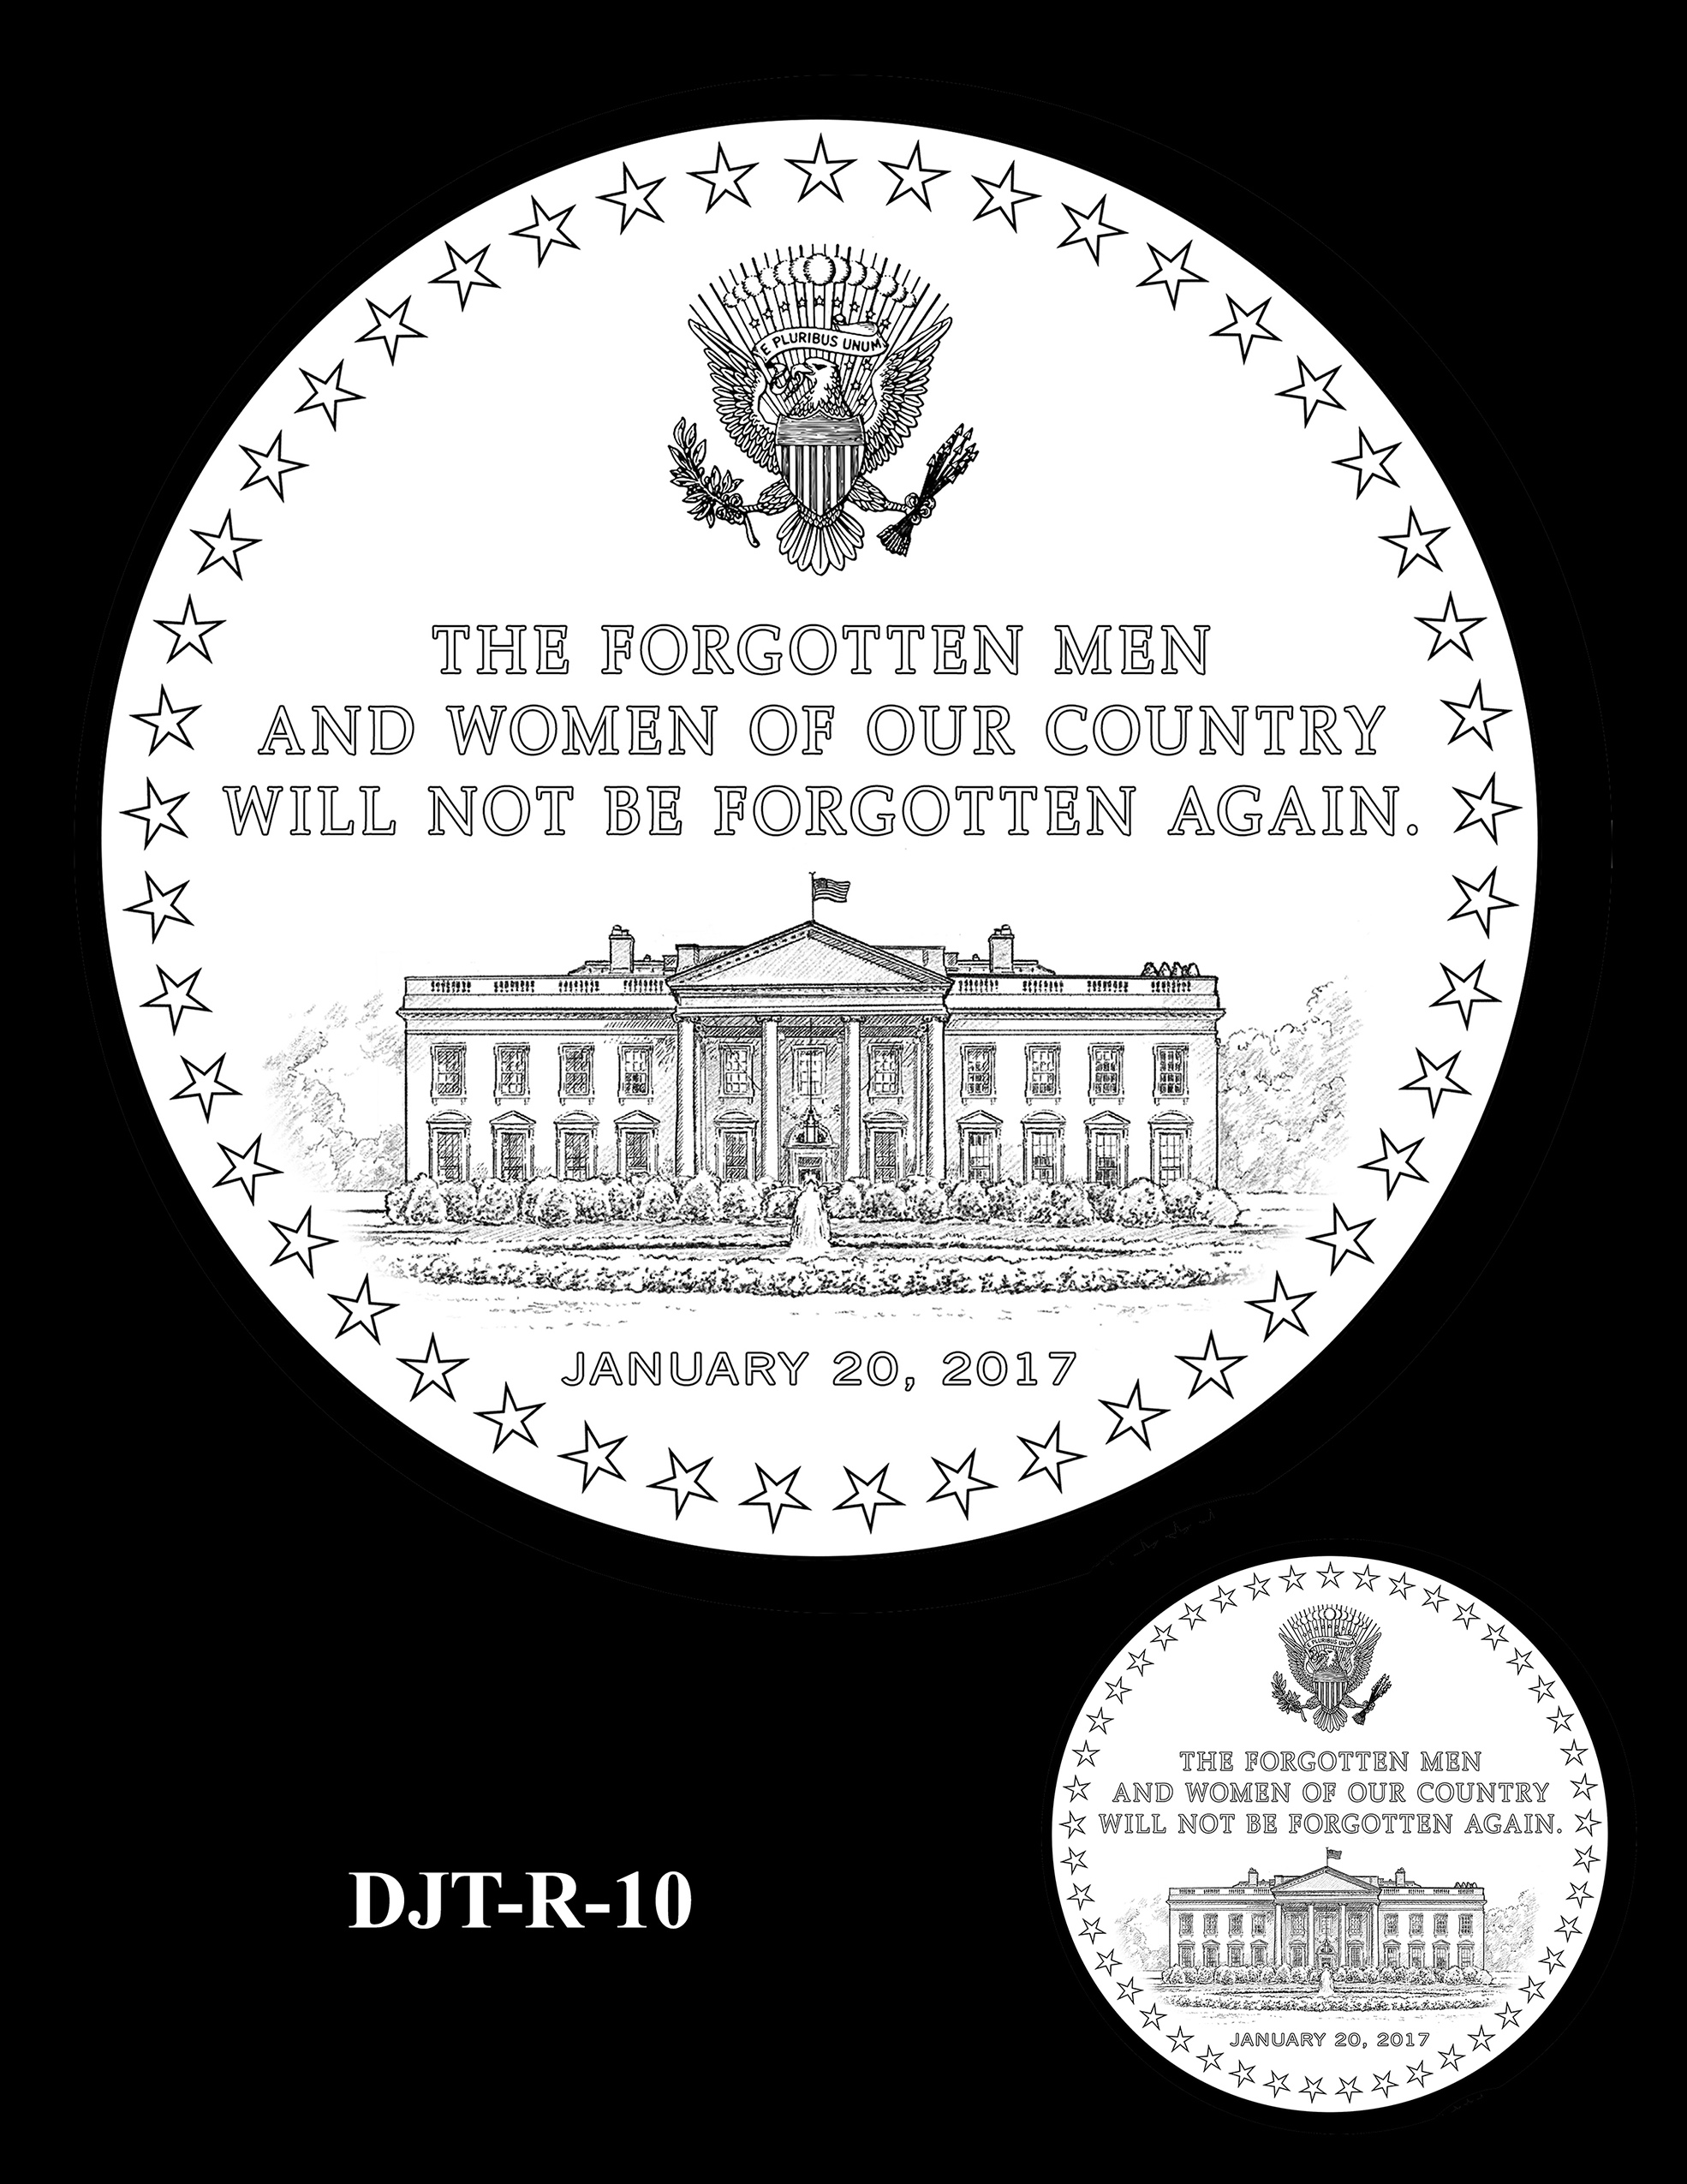 DJT-R-10 -- Donald J. Trump Presidential Medal